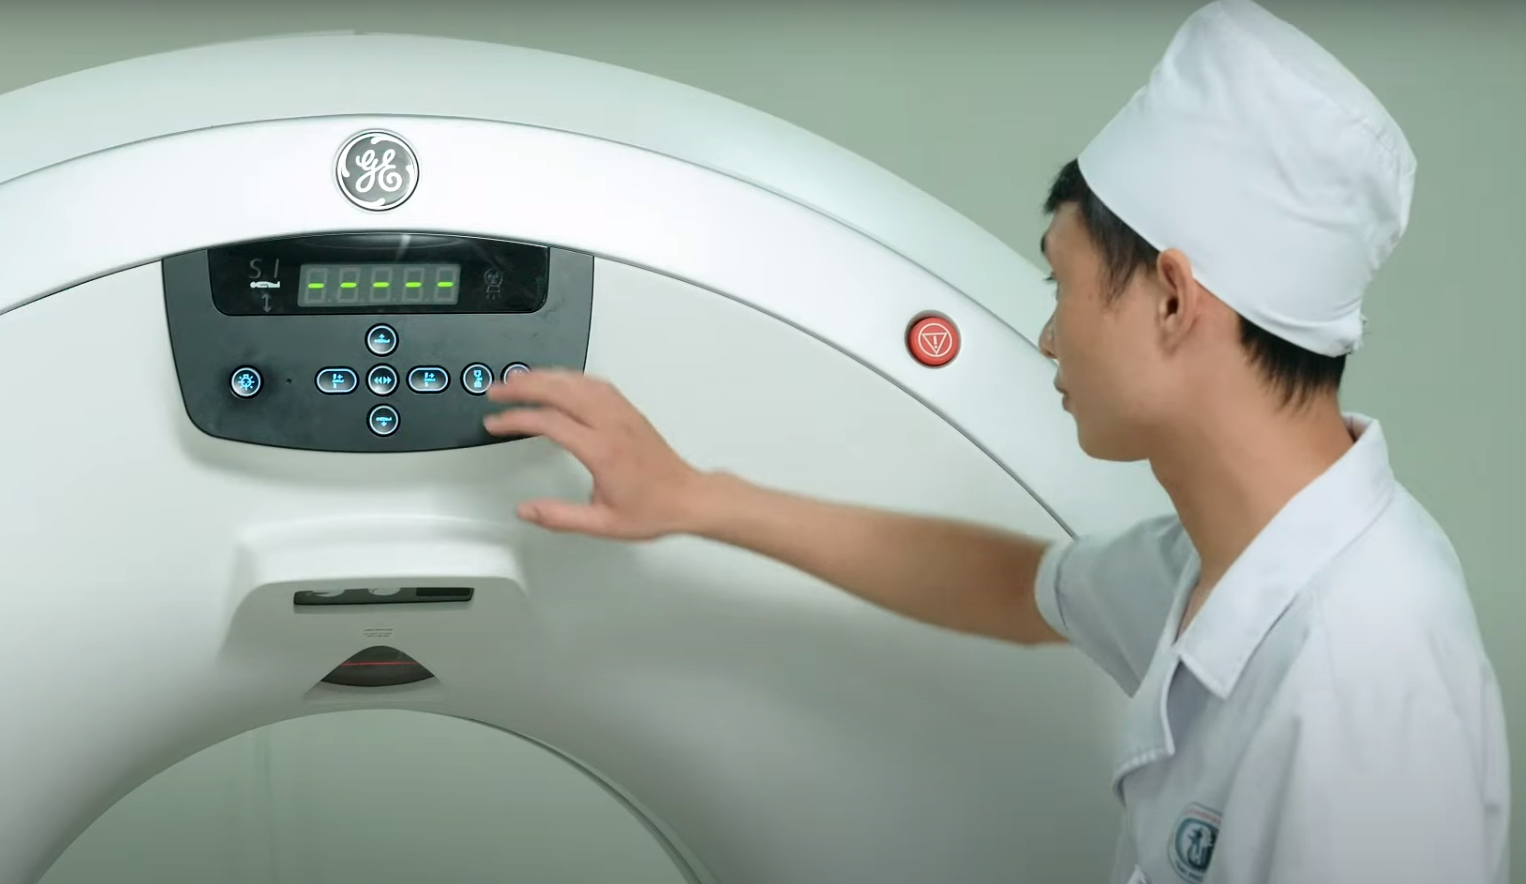 Bệnh viện Y dược cổ truyền và phục hồi chức năng Tỉnh Phú Thọ nâng cấp hệ thống máy móc hiện đại